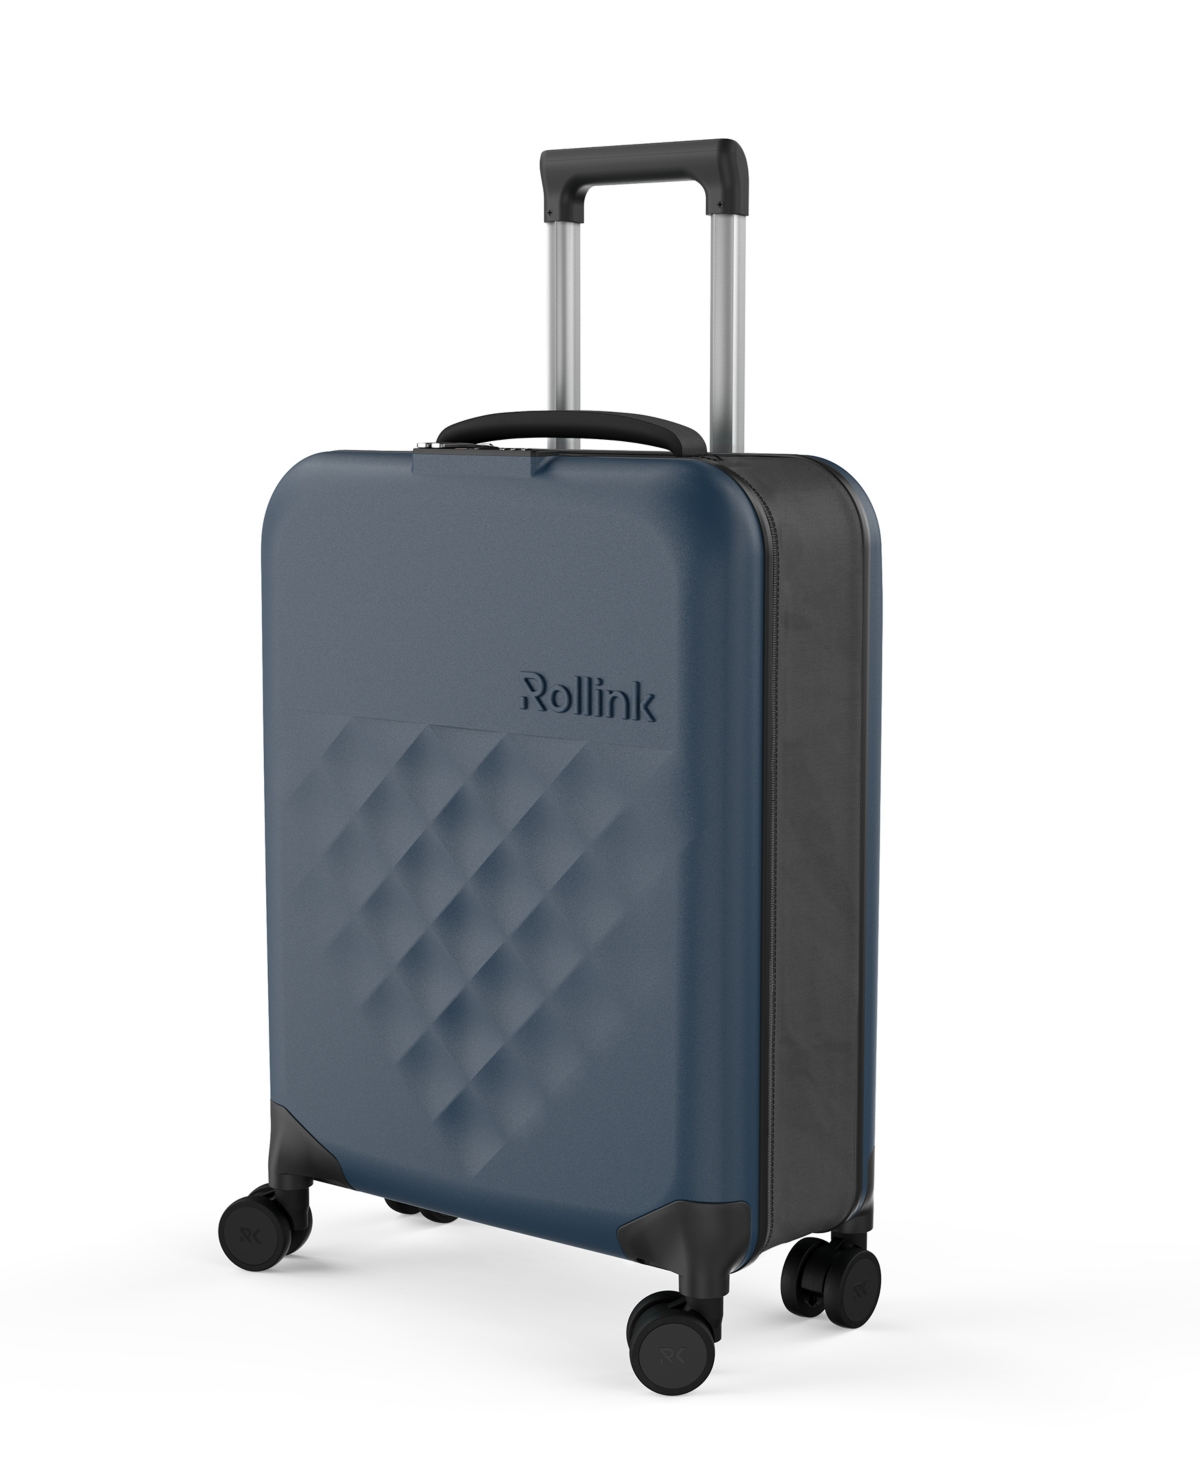 Rollink Flex 360 International 21" Carry-on Spinner Suitcase In Dark Blue